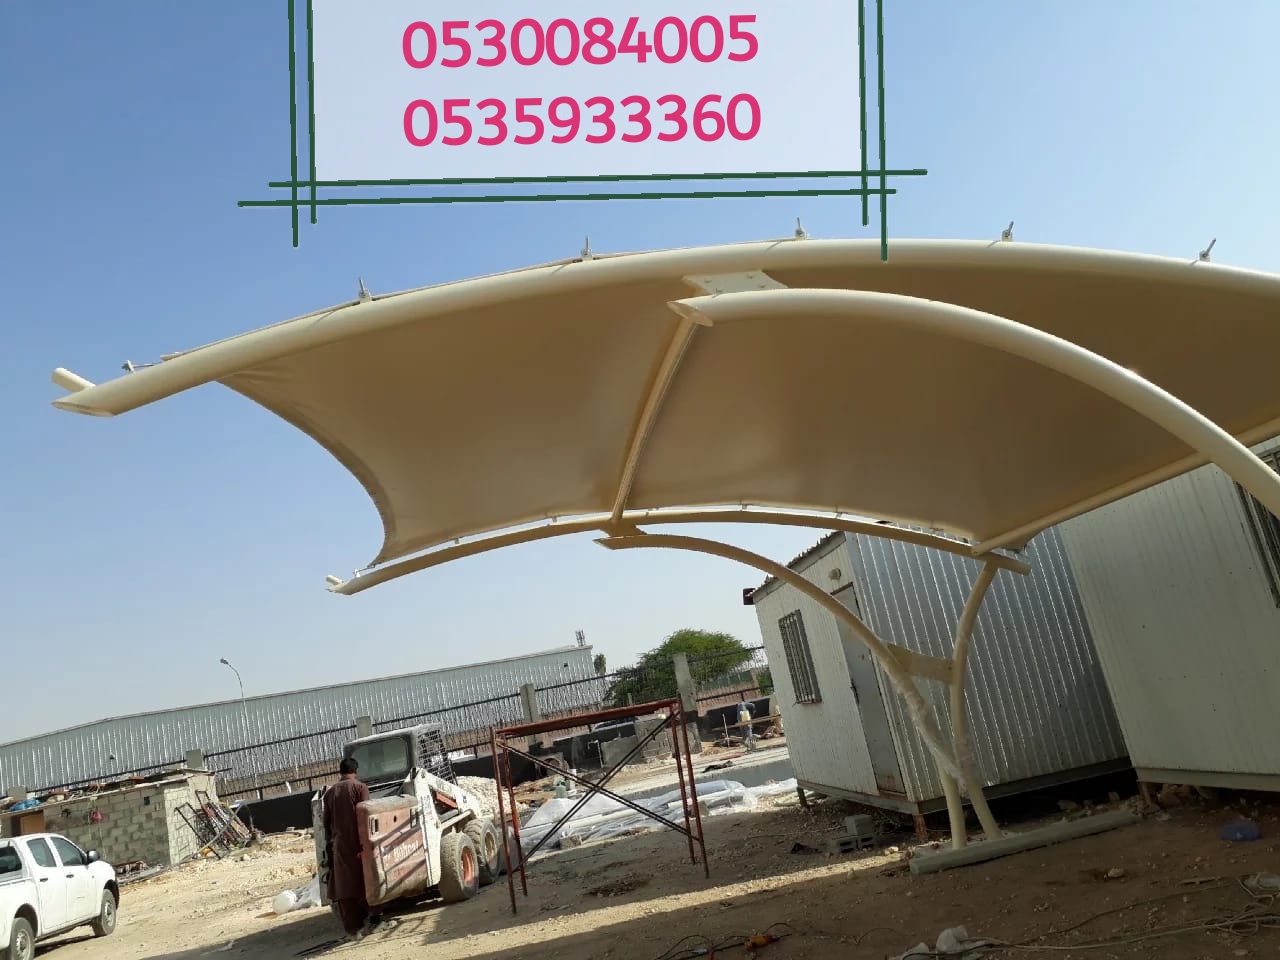 مؤسسة رواق المستقبل لبيع الحواجز الخرسانية والمصدات في الرياض 0530084005  P_1502mvmoe2